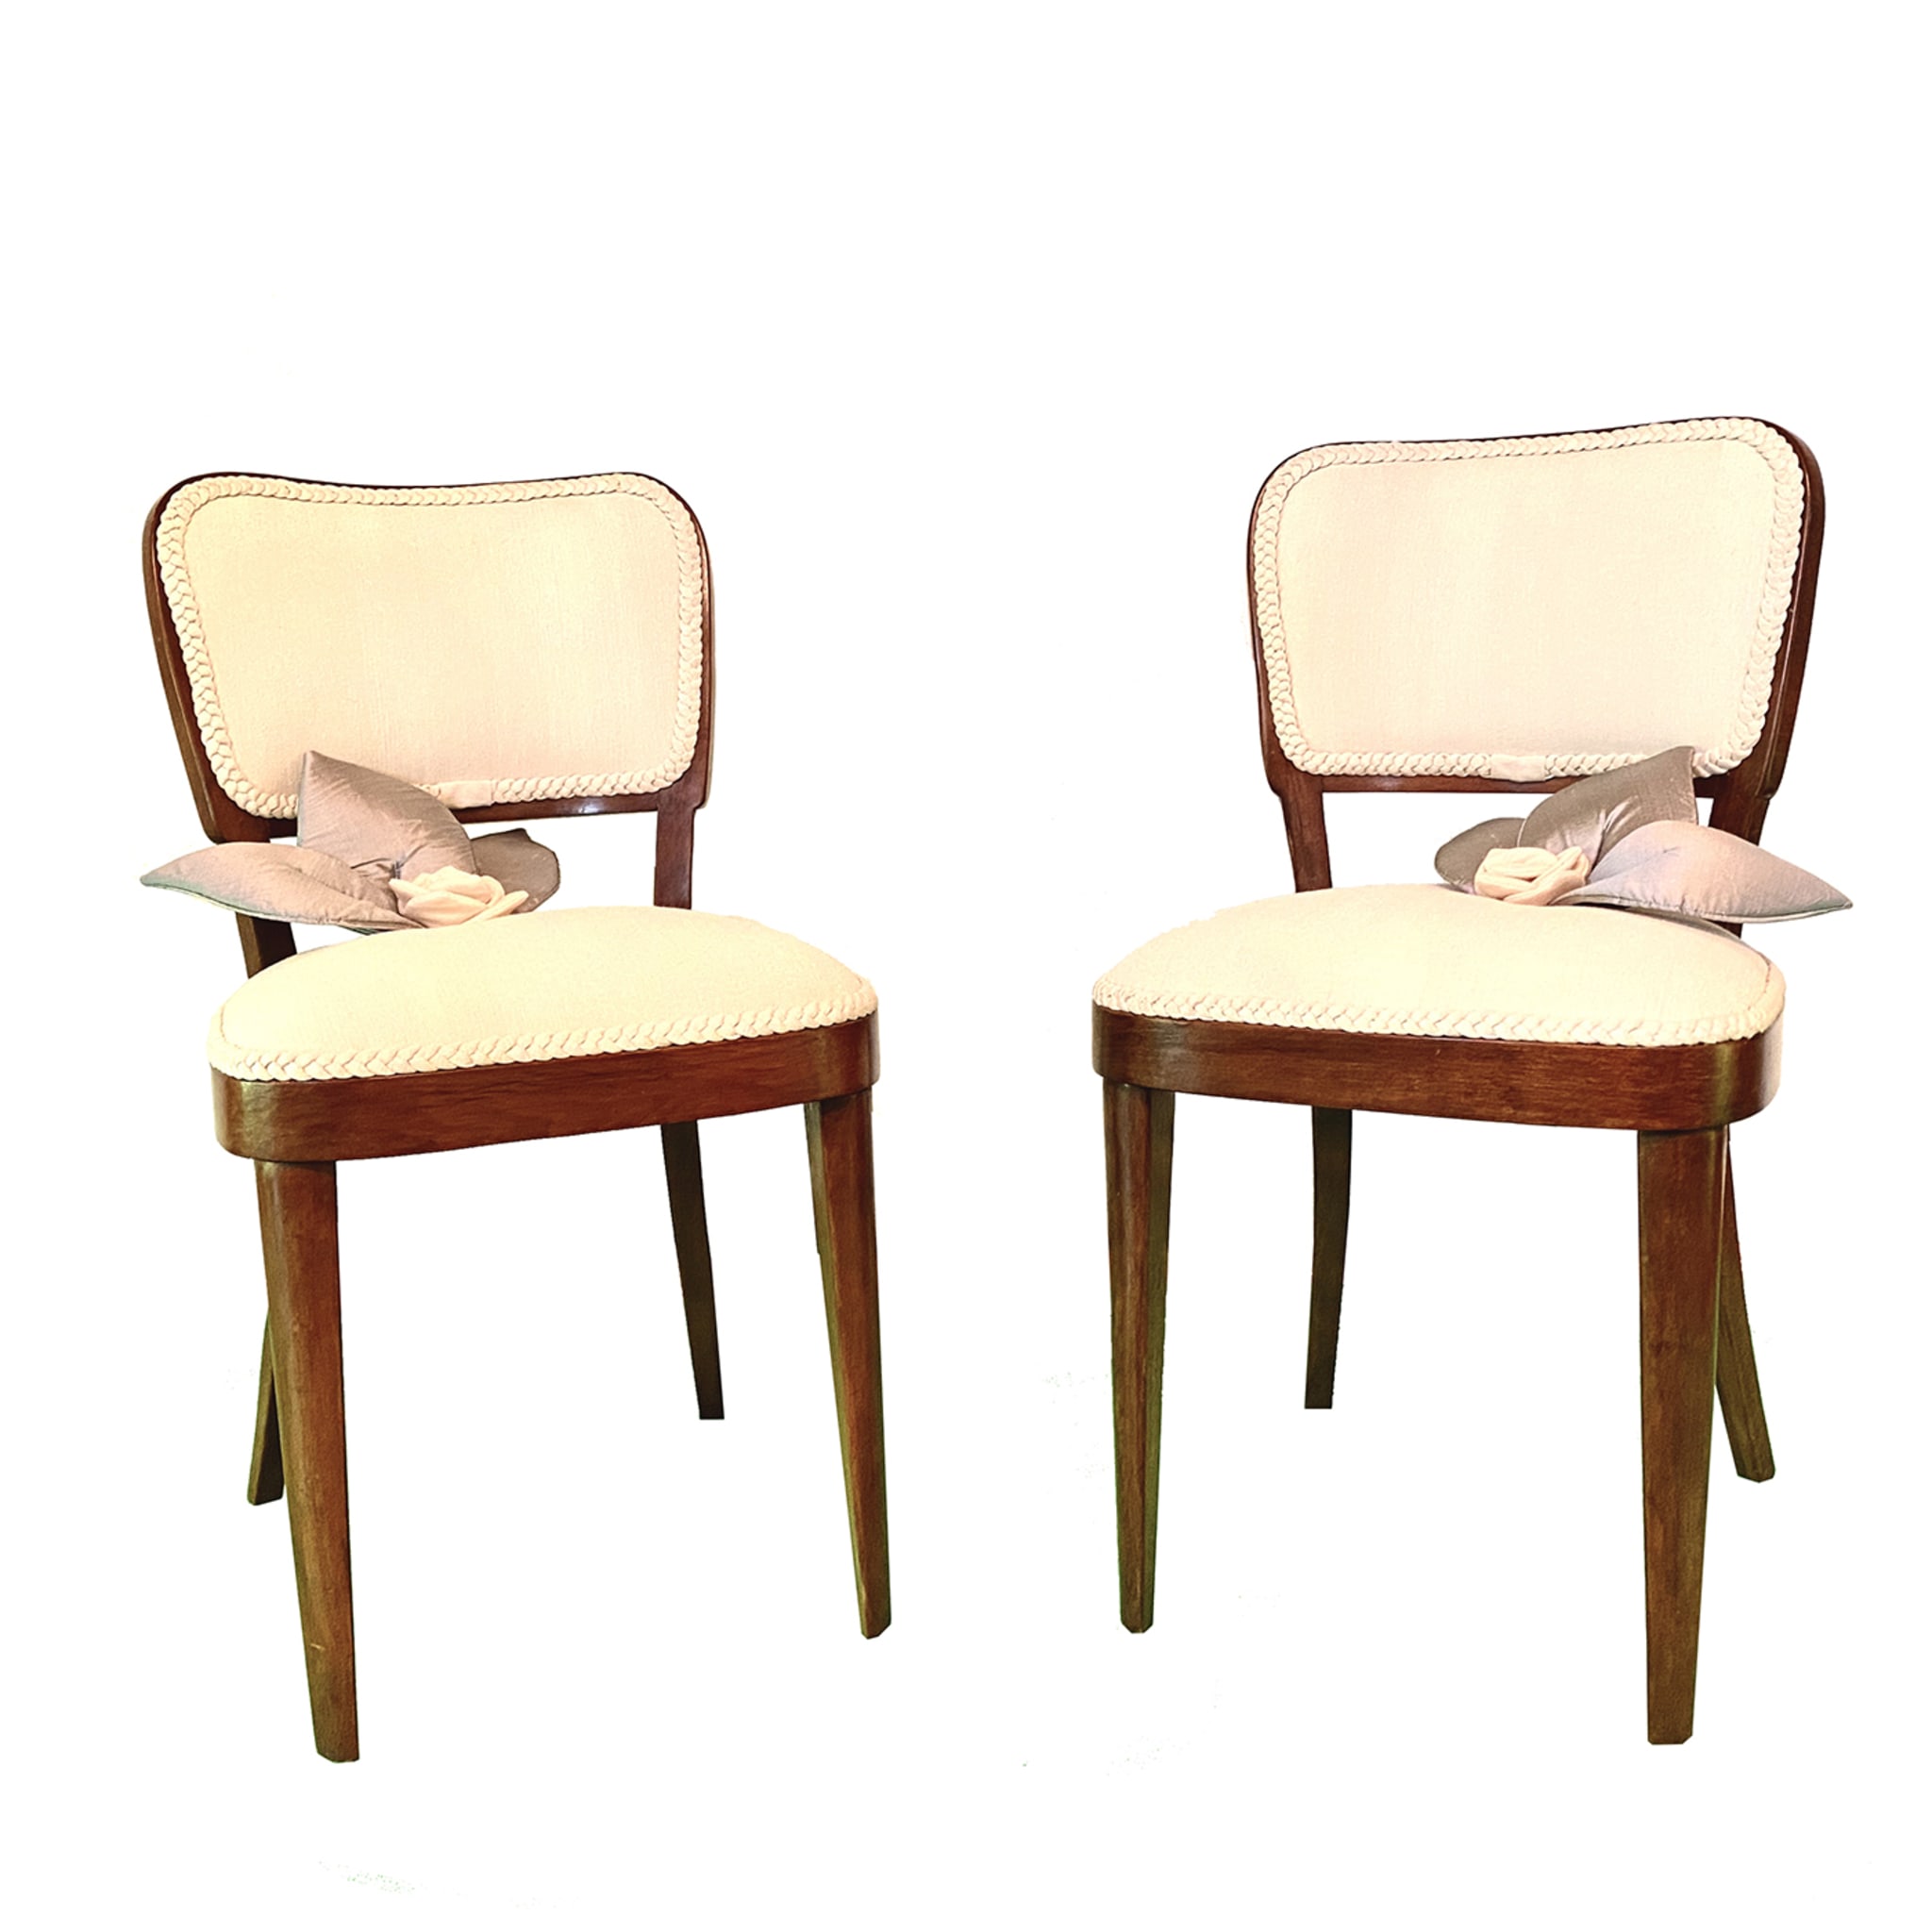 Raw Silk Set of 2 White Chairs - Main view